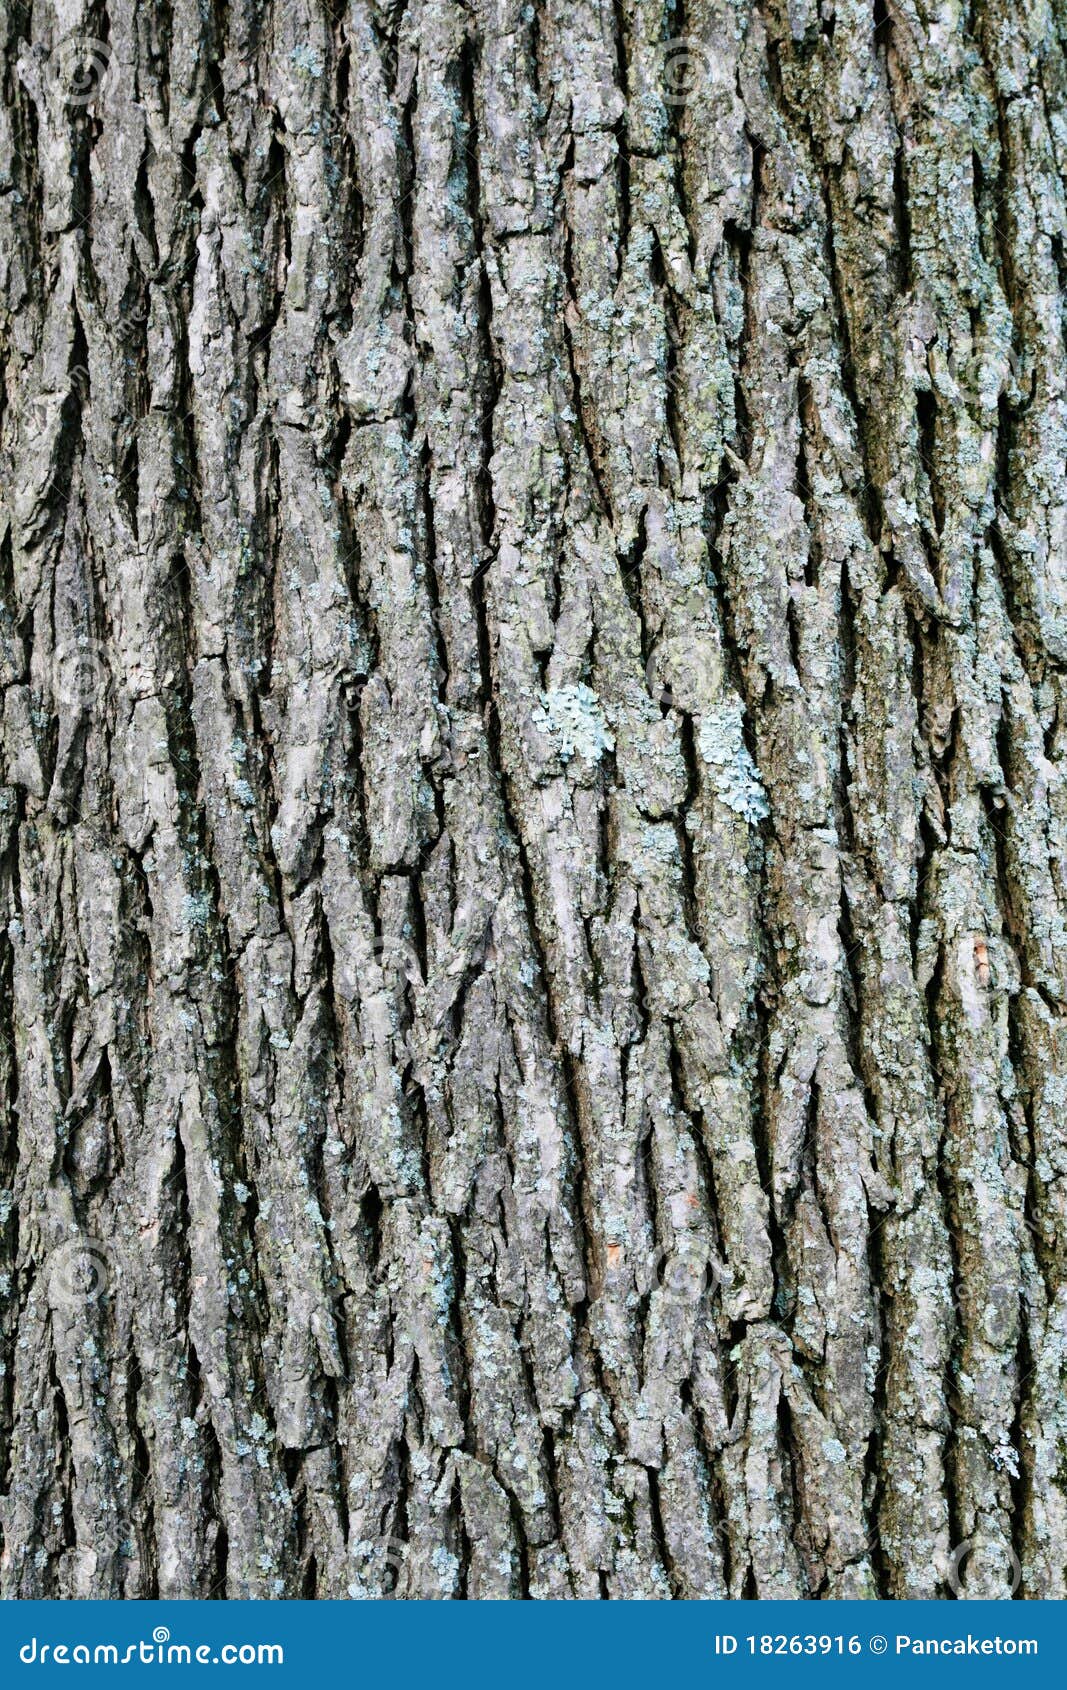 swamp white oak bark